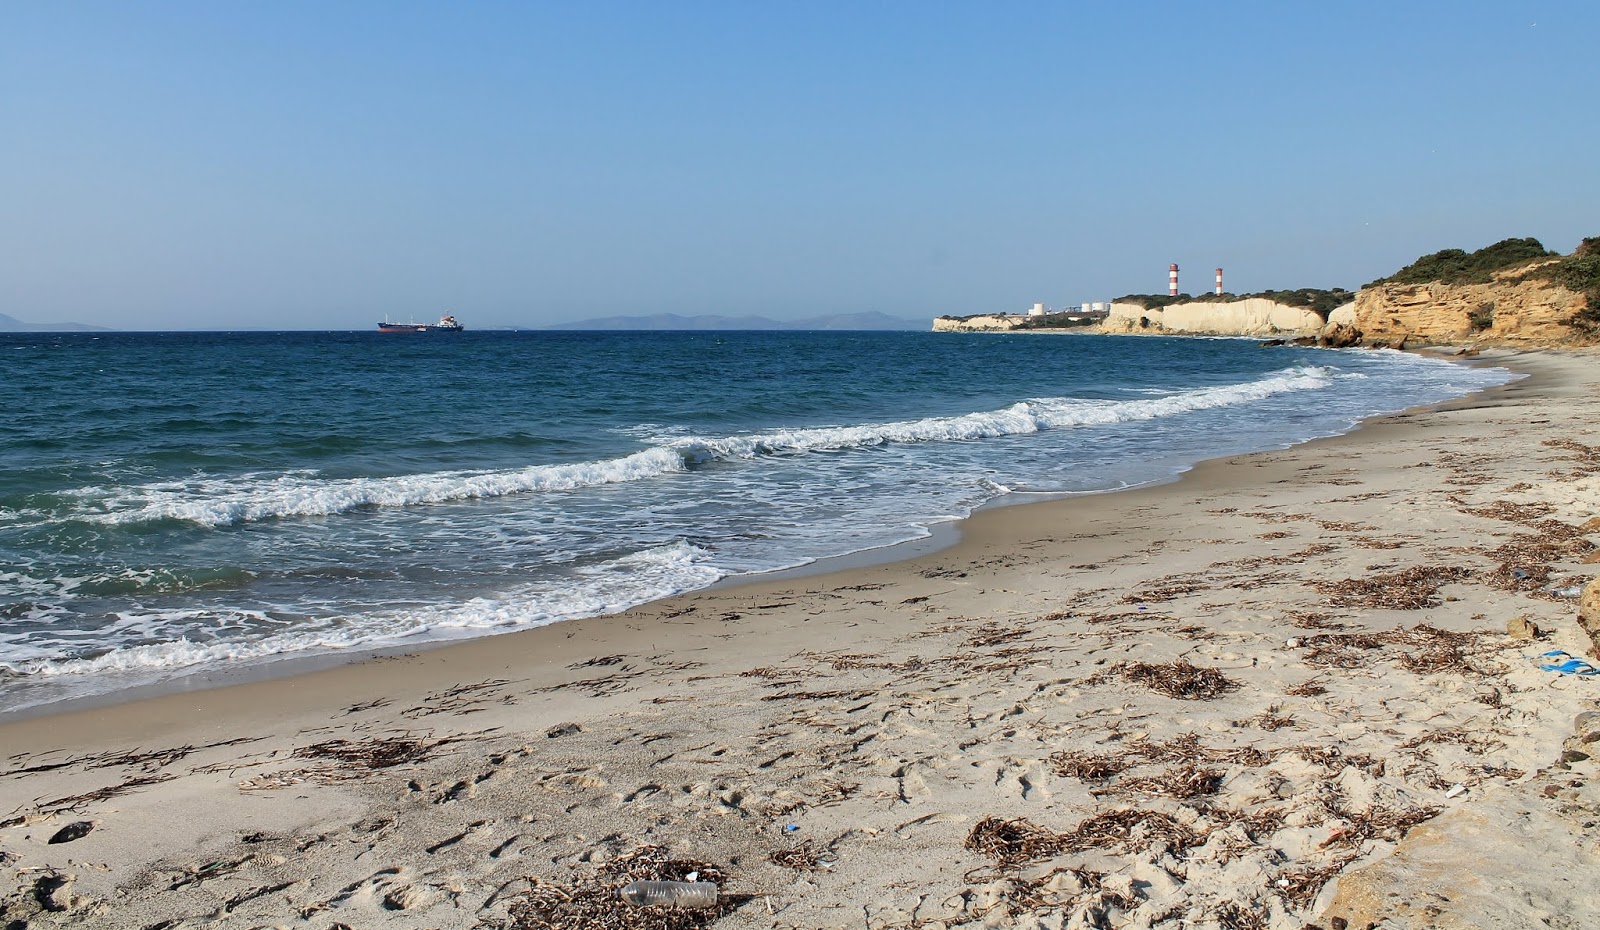 Atsa beach'in fotoğrafı gri kum yüzey ile